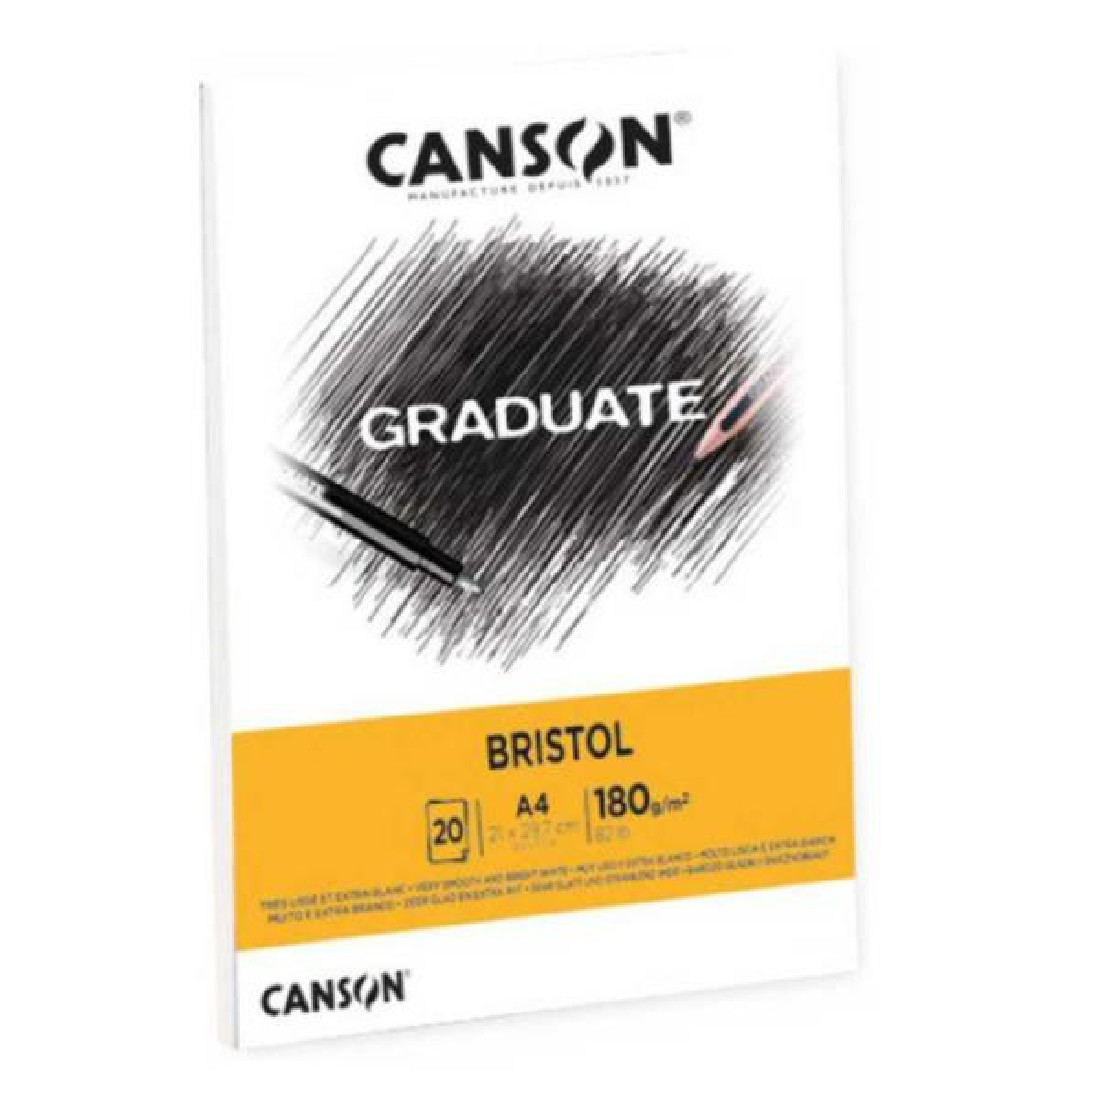 Μπλόκ Σχεδίου Graduate Bristol A4 180gr. 20sh. 400127676 Canson